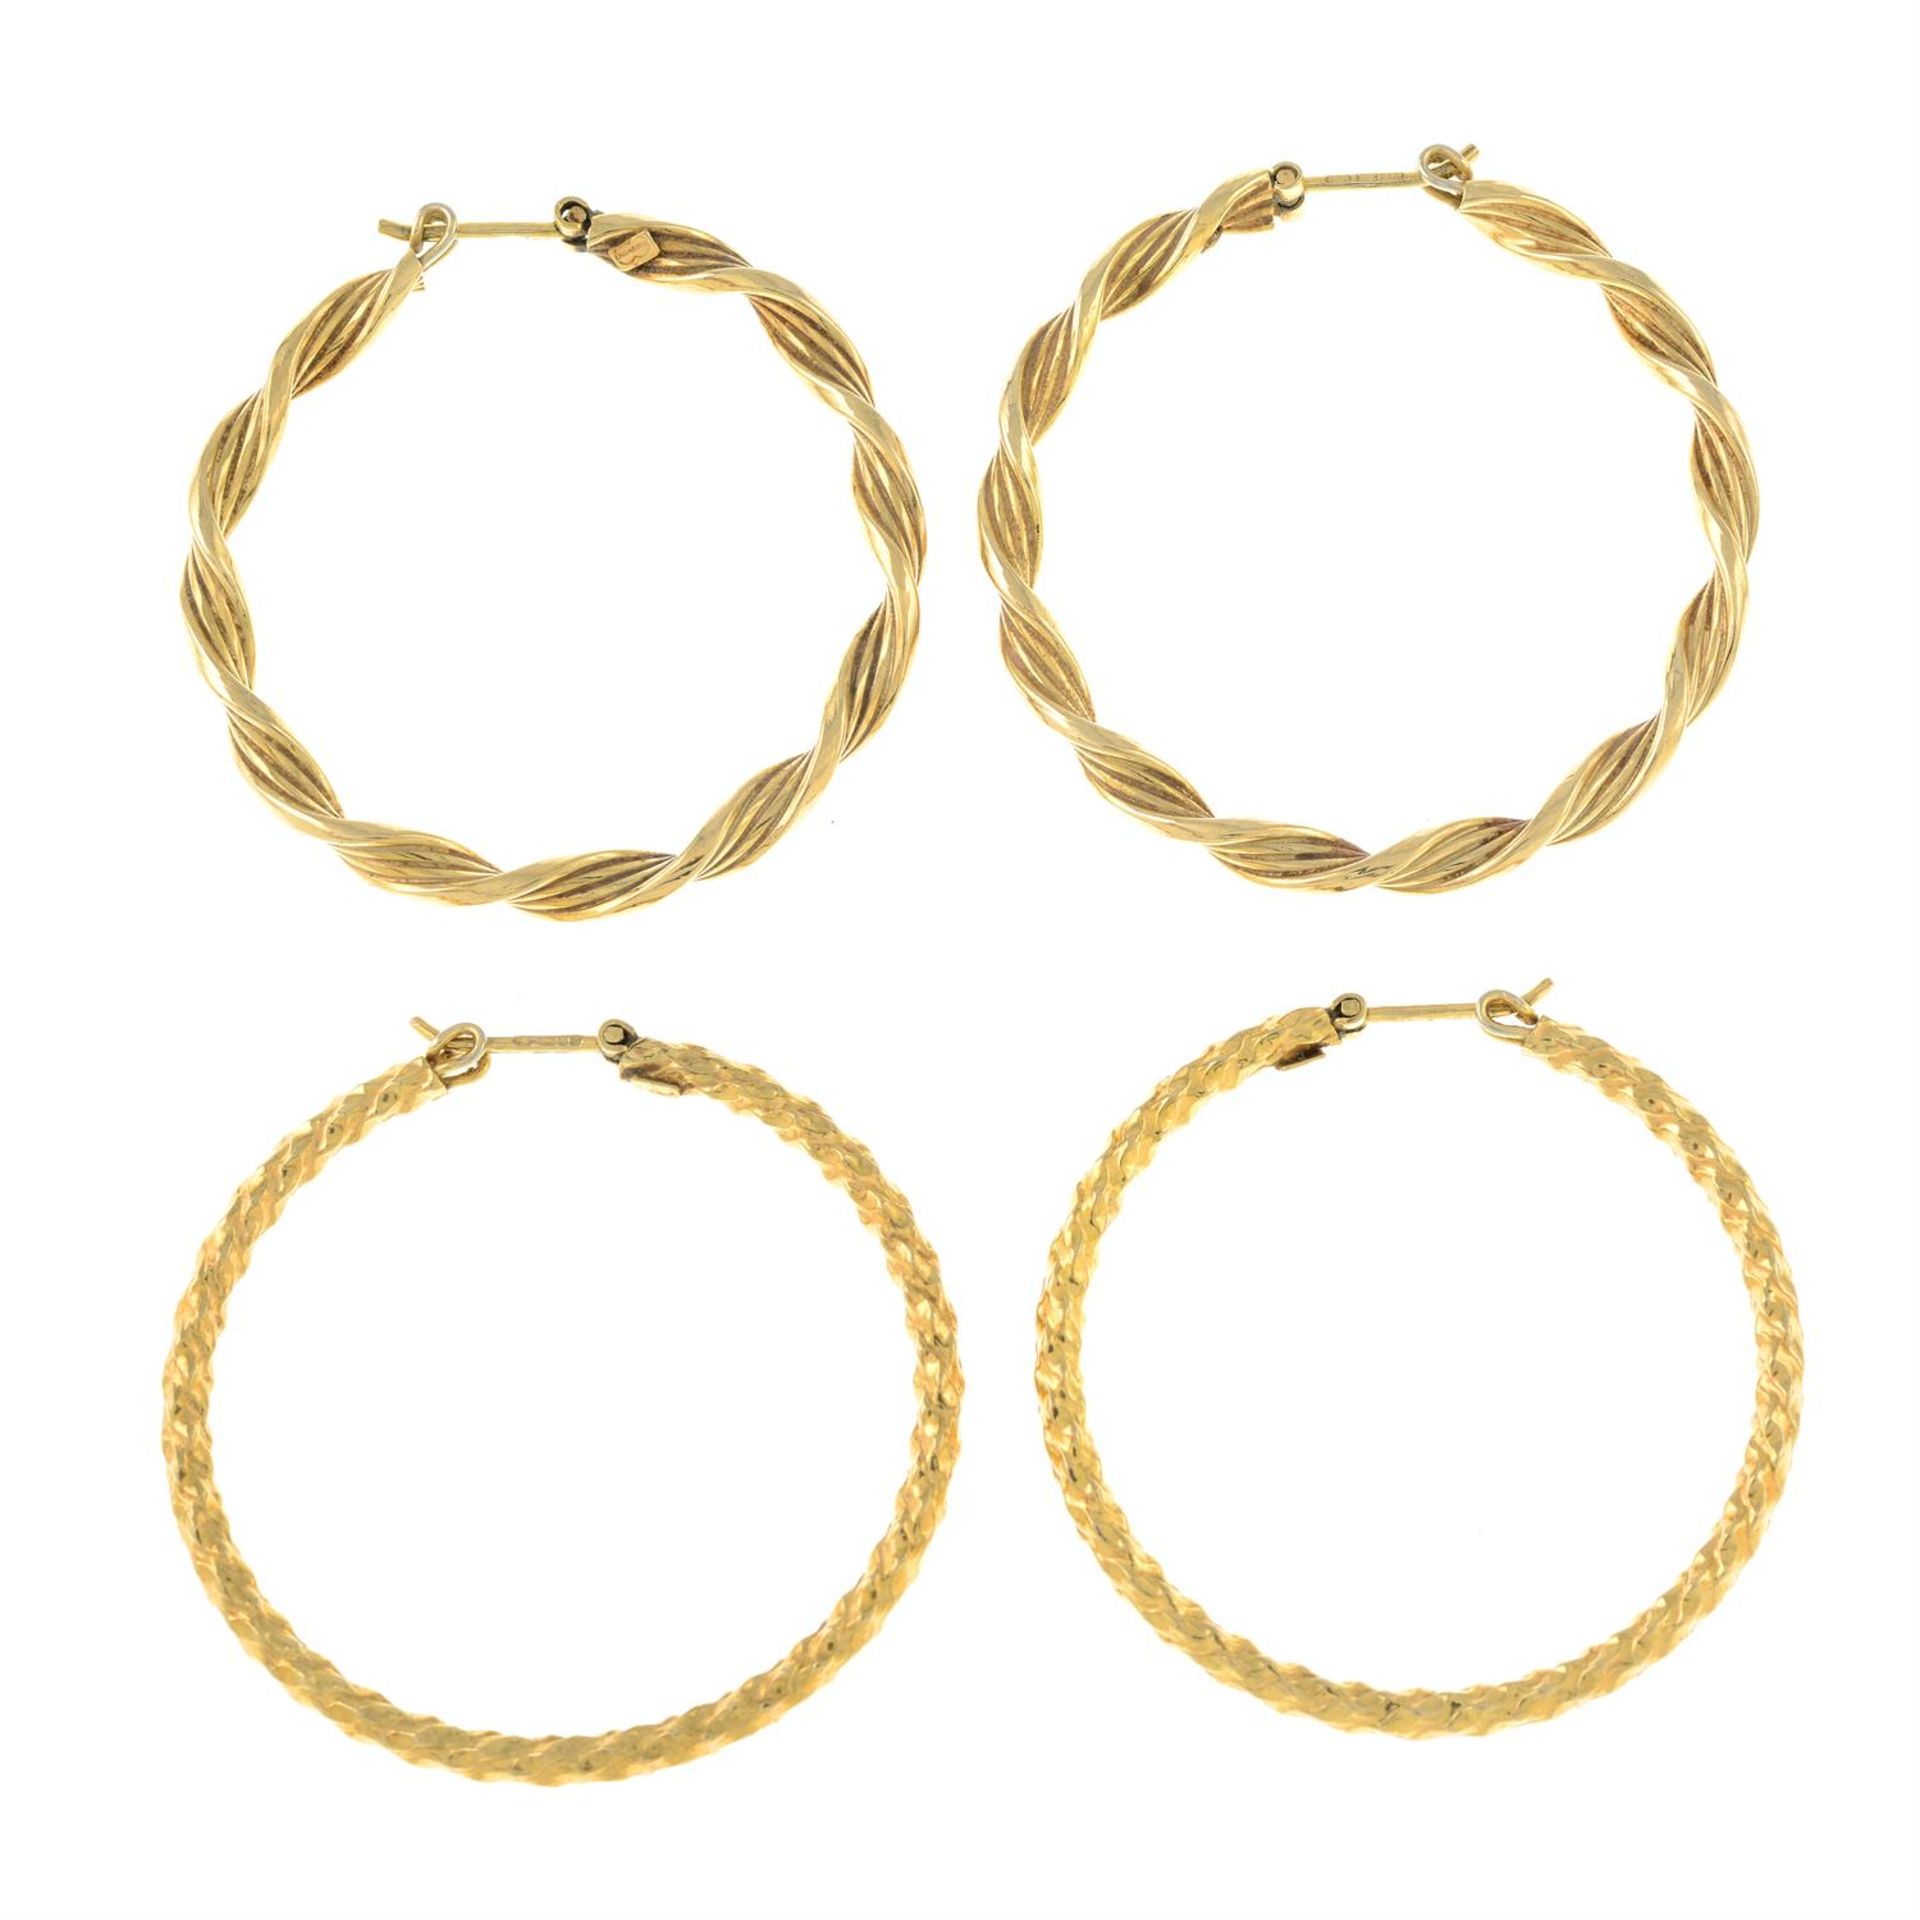 Two pairs of 9ct gold hoop earrings.